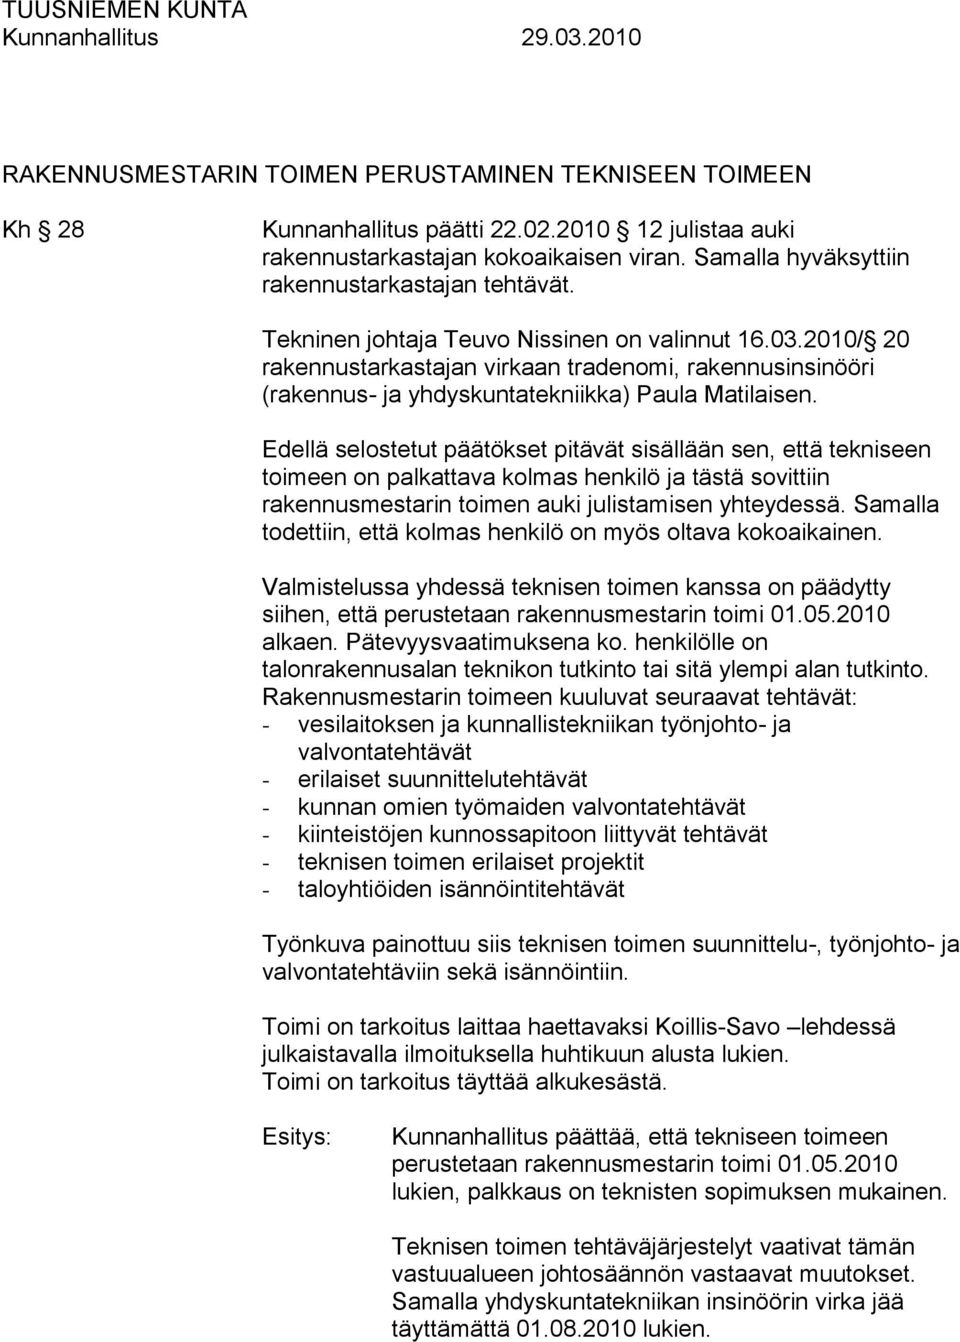 2010/ 20 rakennustarkastajan virkaan tradenomi, rakennusinsinööri (rakennus- ja yhdyskuntatekniikka) Paula Matilaisen.